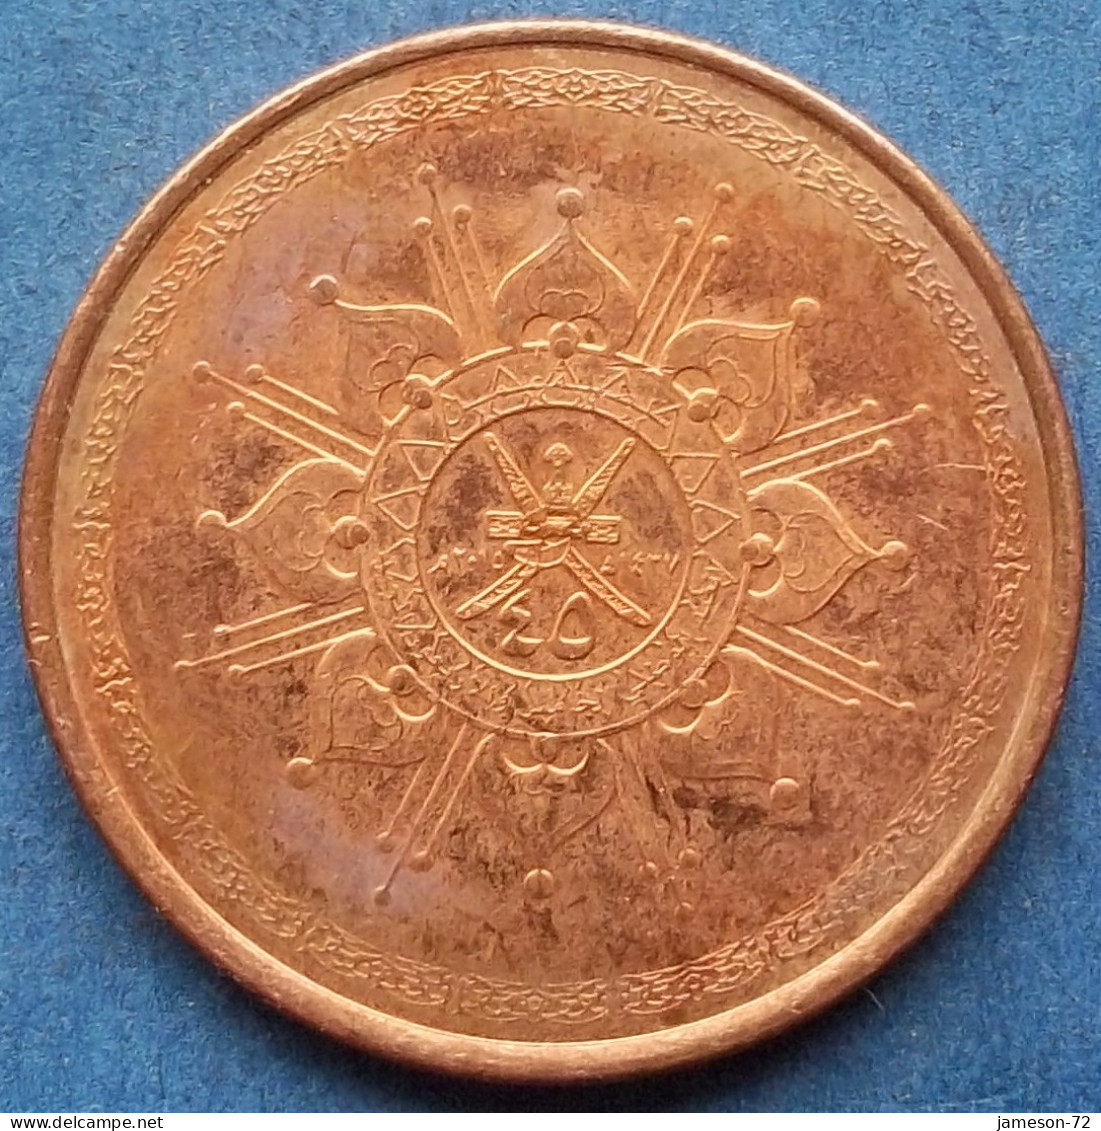 OMAN - 10 Baisa AH1437 2015AD KM# 194 Sultan Quabus Bin Sa'id Reform Coinage (1972) - Edelweiss Coins - Oman